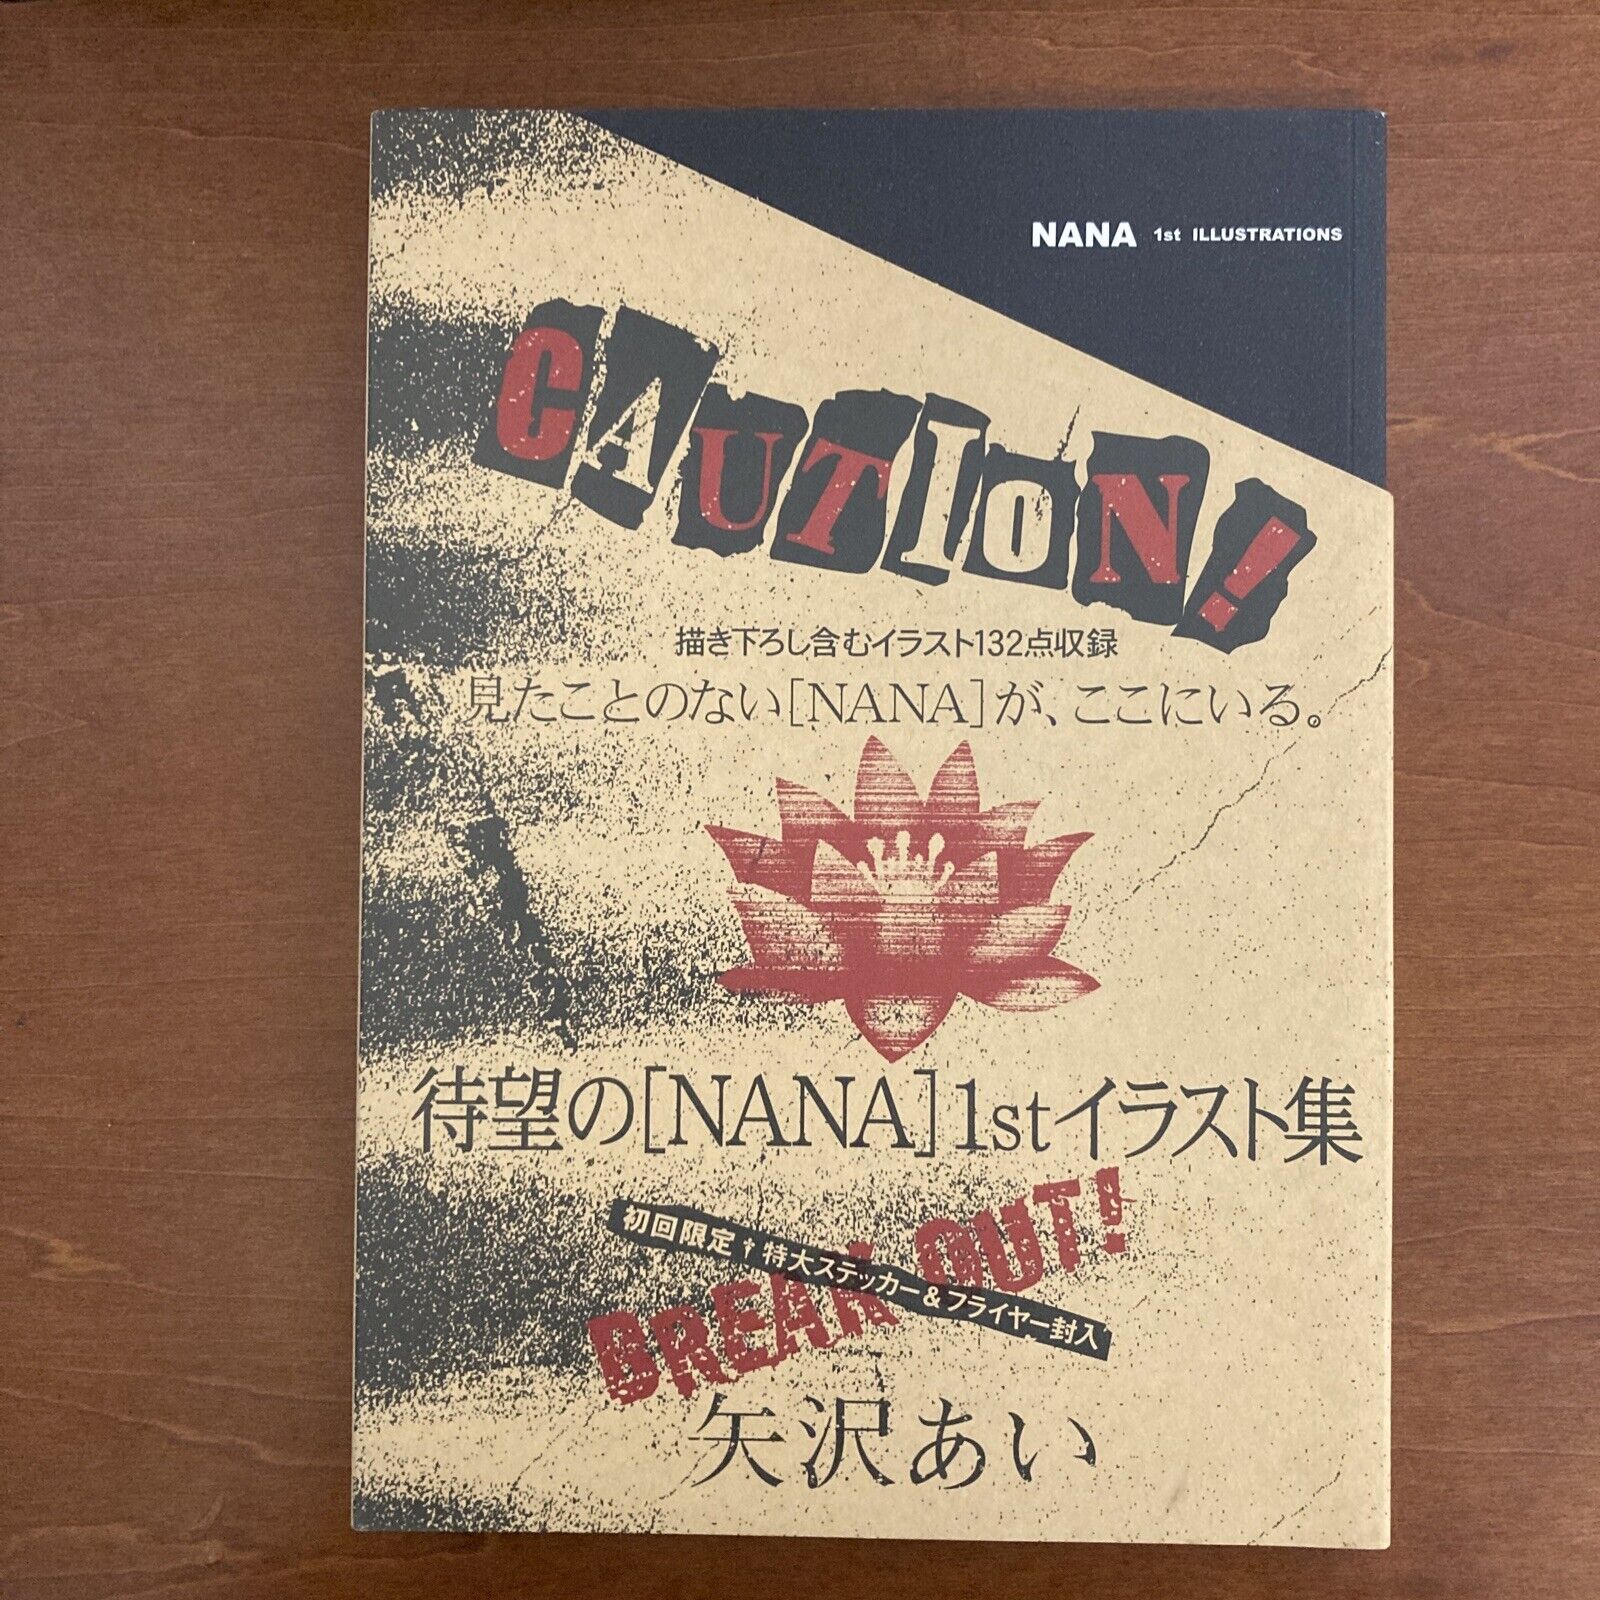 NANA 1st ILLUSTRATIONS Ai Yazawa Art Book